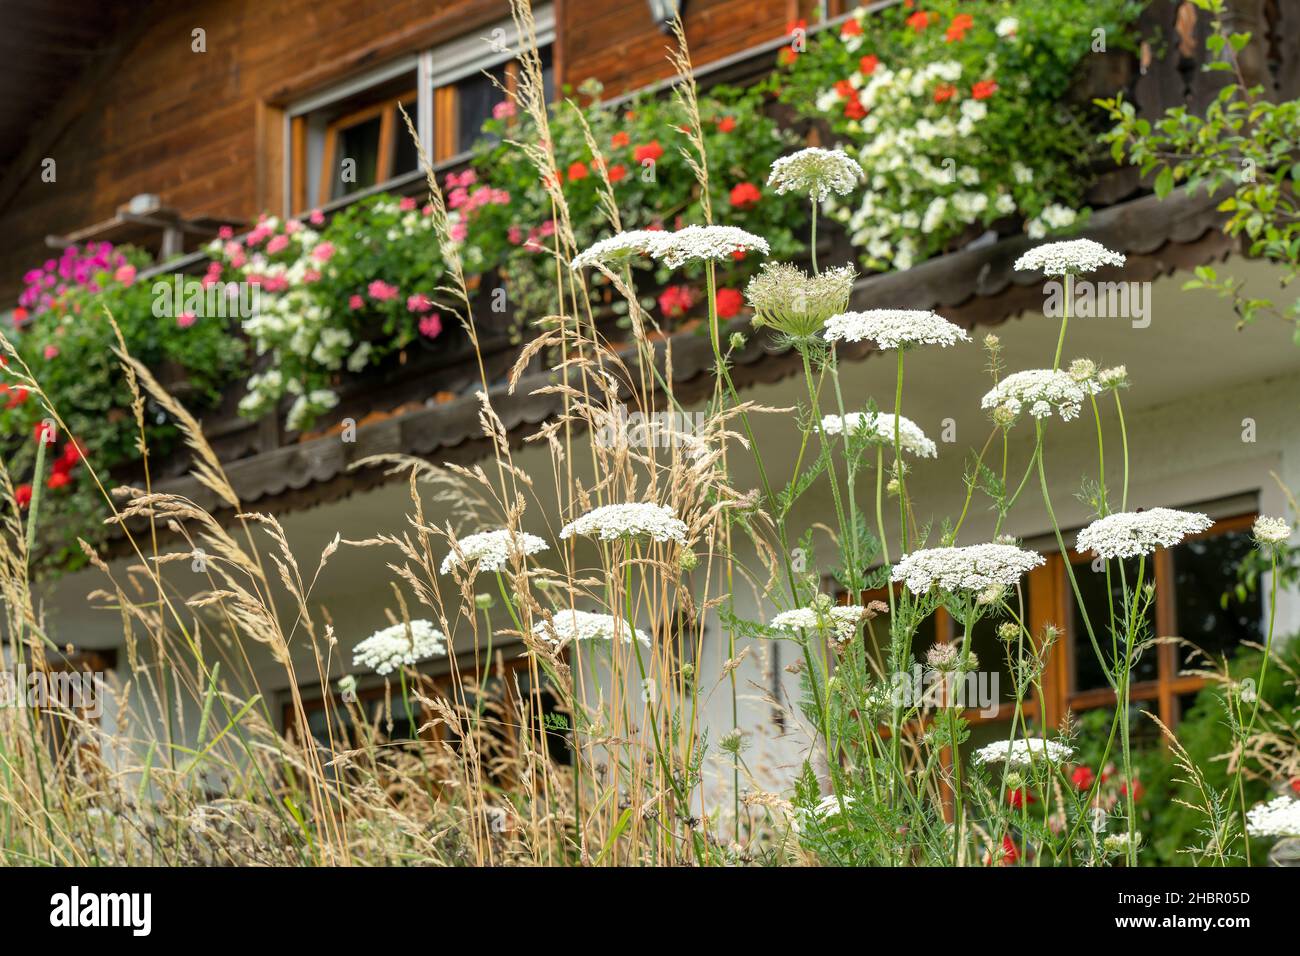 herrlicher Blumenschmuck  am Haus davor reichblühende natürlich Blumenwiese mit wilder Möhre und Gräsern Stock Photo